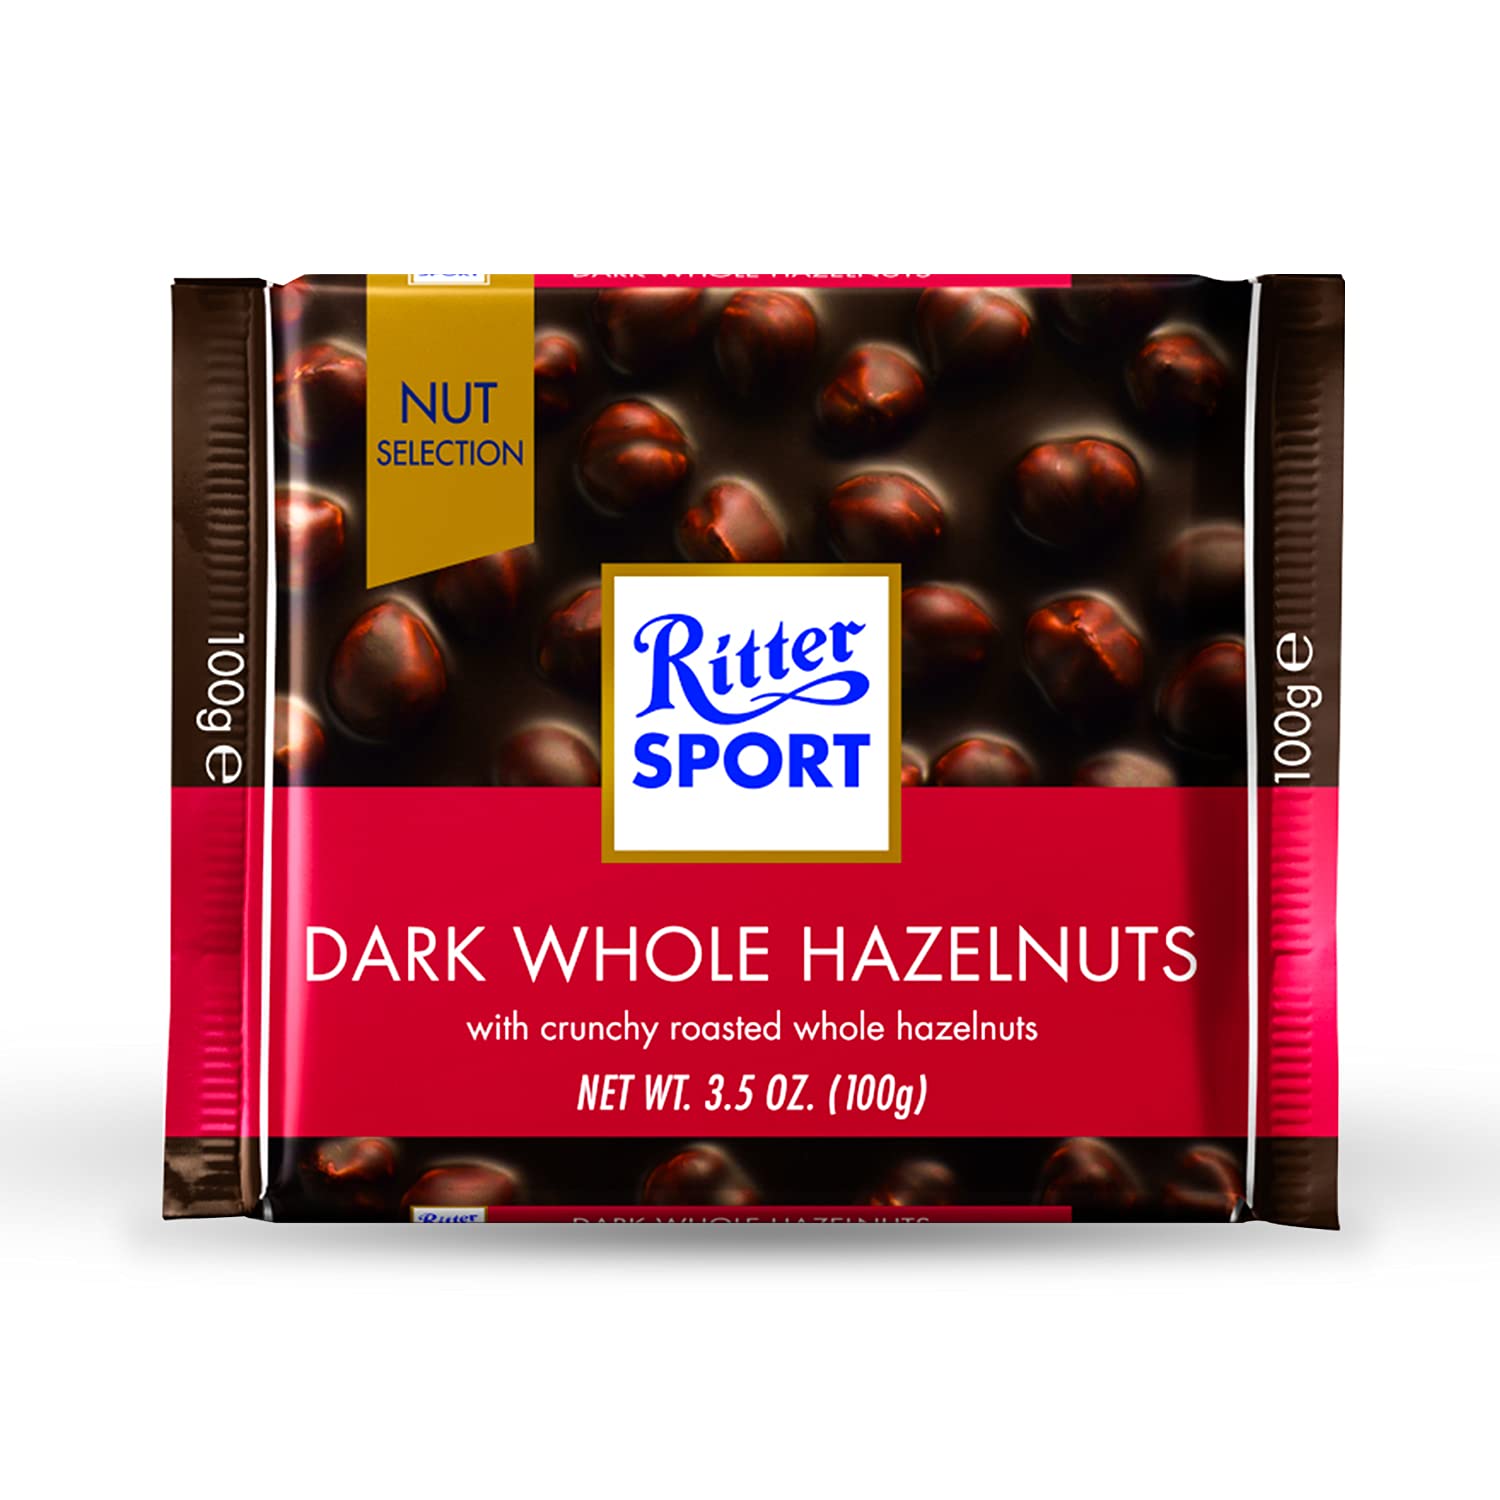 Ritter spot dark whole hazelnut 100g